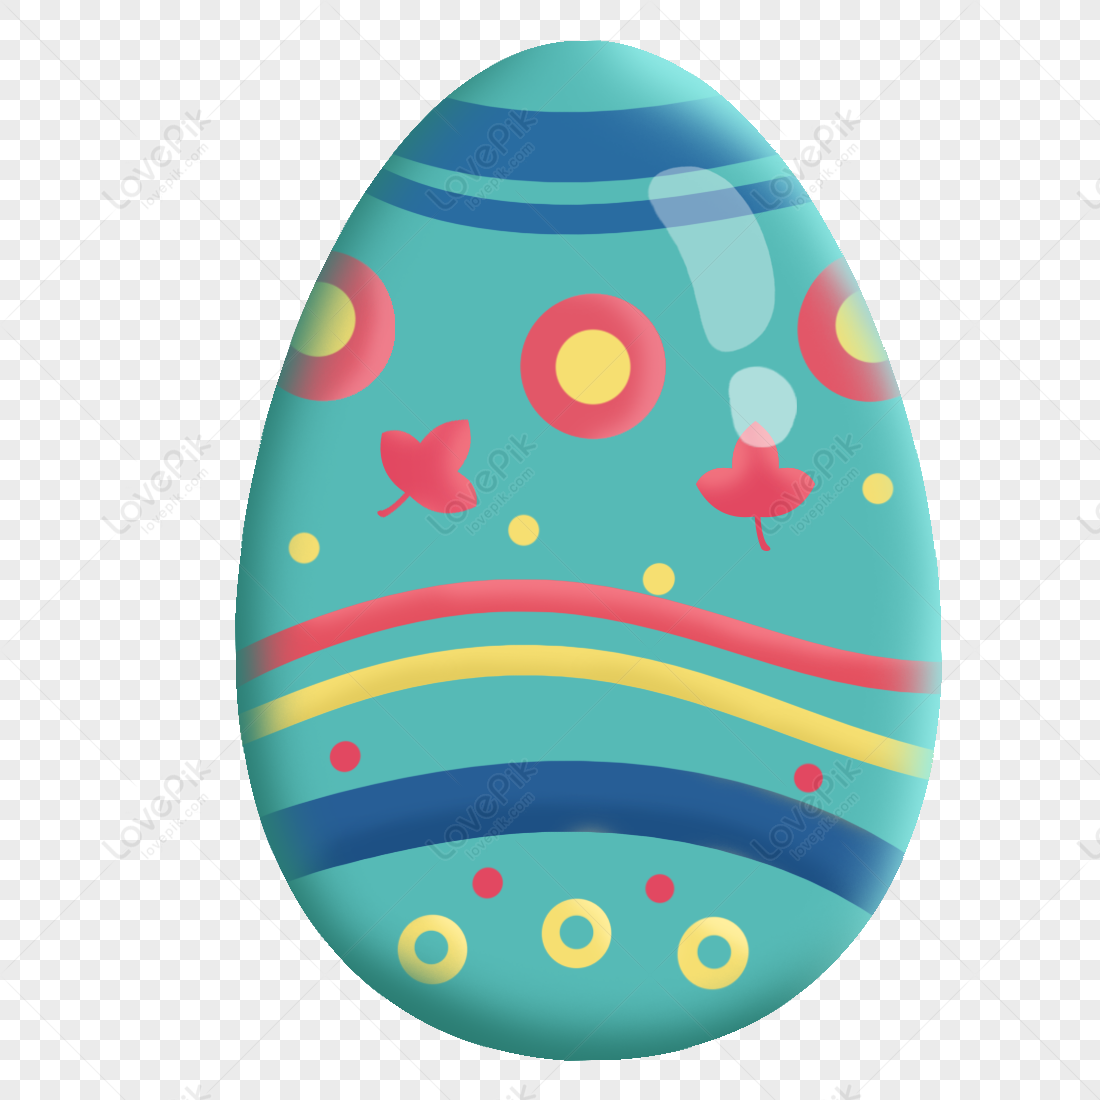 Golden Easter Egg PNG Transparent Images Free Download, Vector Files